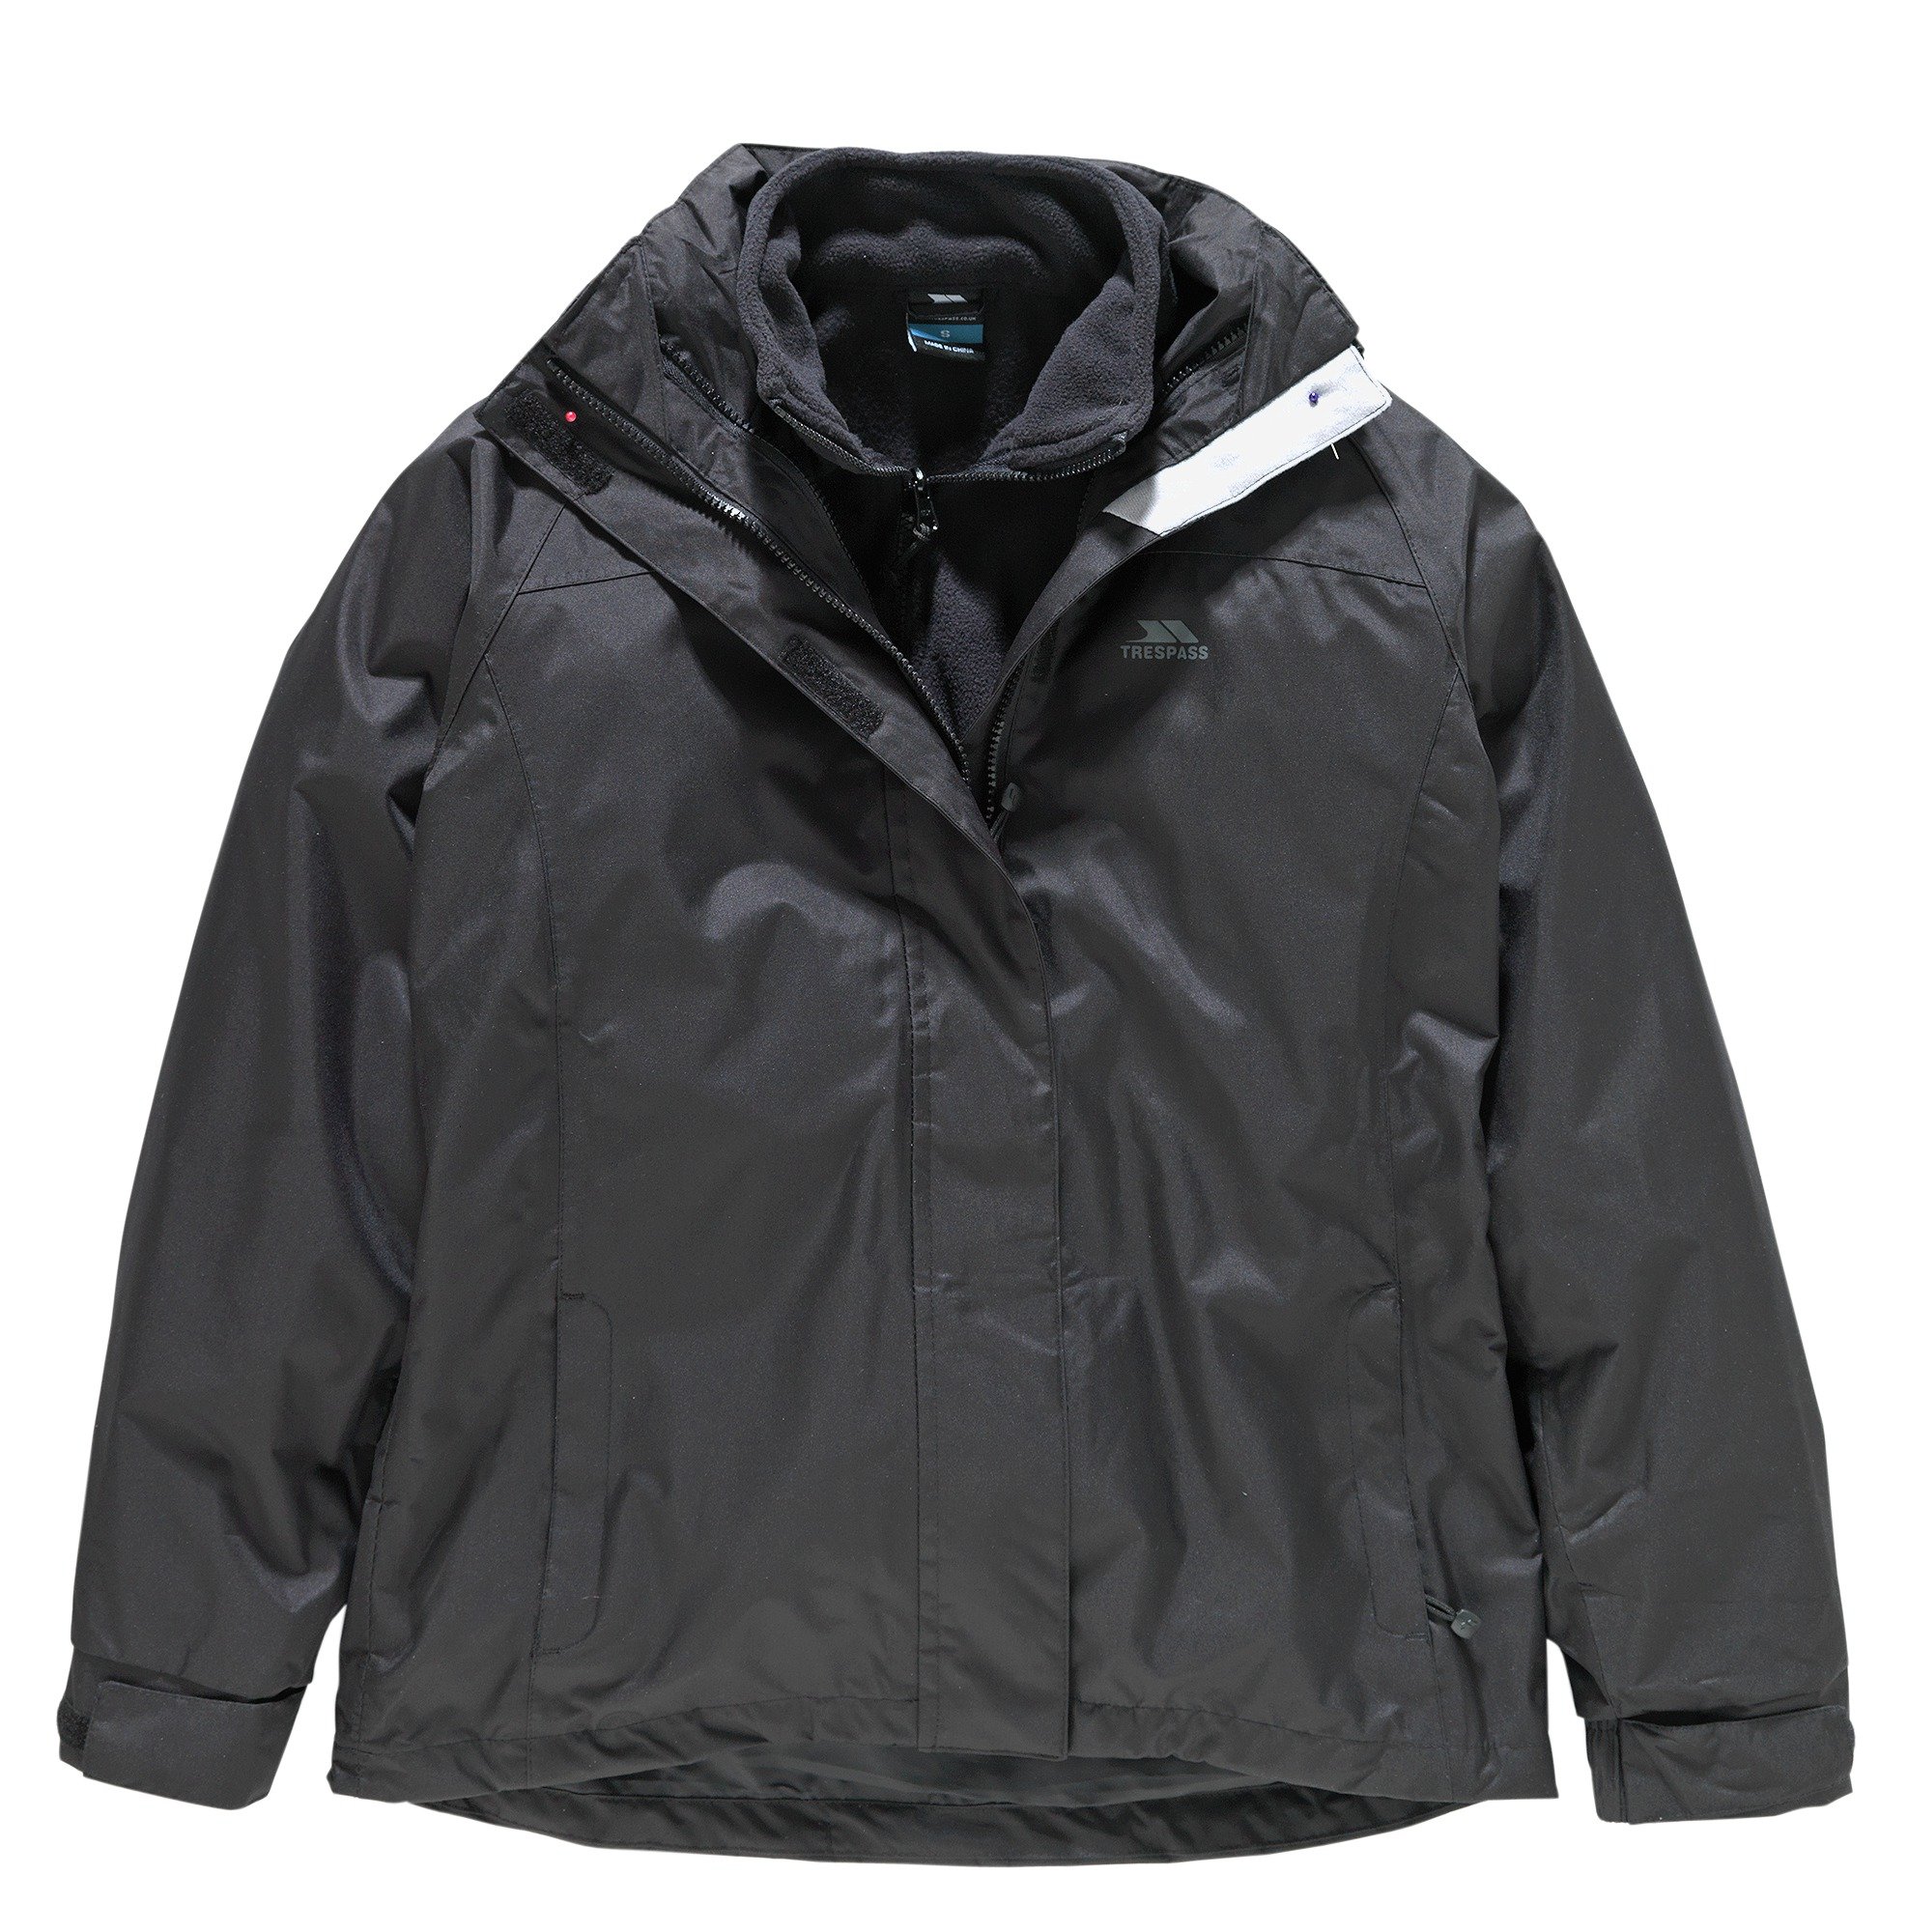 Trespass Black 3-in-1 Jacket & Fleece - Large